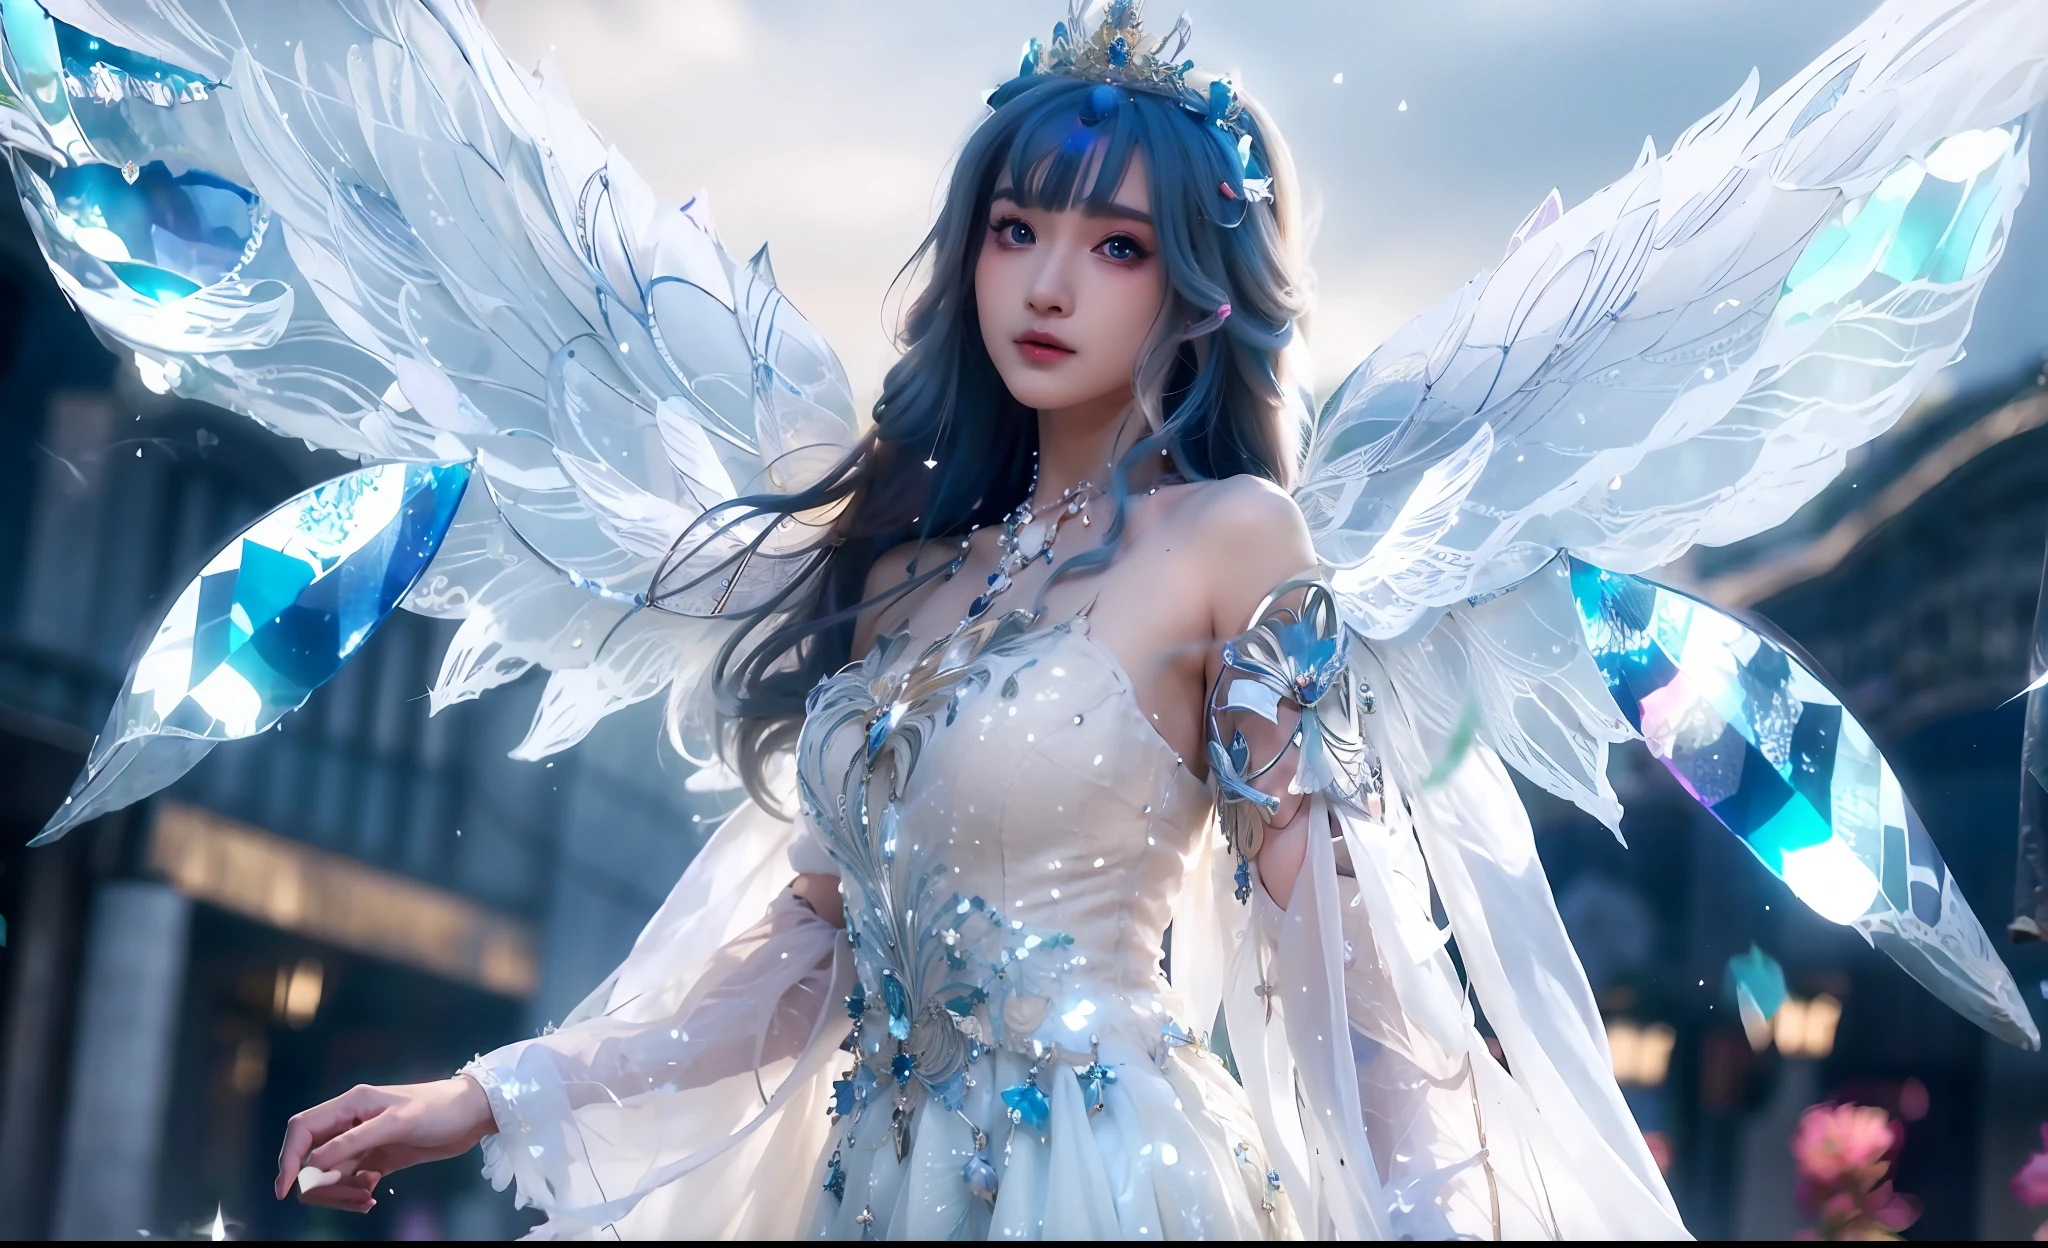 Anime-Mädchen in einem weißen Kleid mit Flügeln und blauen Kristallen, ätherische Flügel, majestätischer Engel mit vollem Körper, wunderschöner Fantasy-Anime, Ätherische Fantasie, wunderschöner Engel, eine wunderschöne Fantasiekaiserin, of wunderschöner Engel, Fantasy-Kunststil, Astralfee, große weiß leuchtende Flügel, of an wunderschöner Engel girl, Anime-Göttin, young wan angel, Engel Ritter Mädchen, ((eine wunderschöne Fantasiekaiserin))